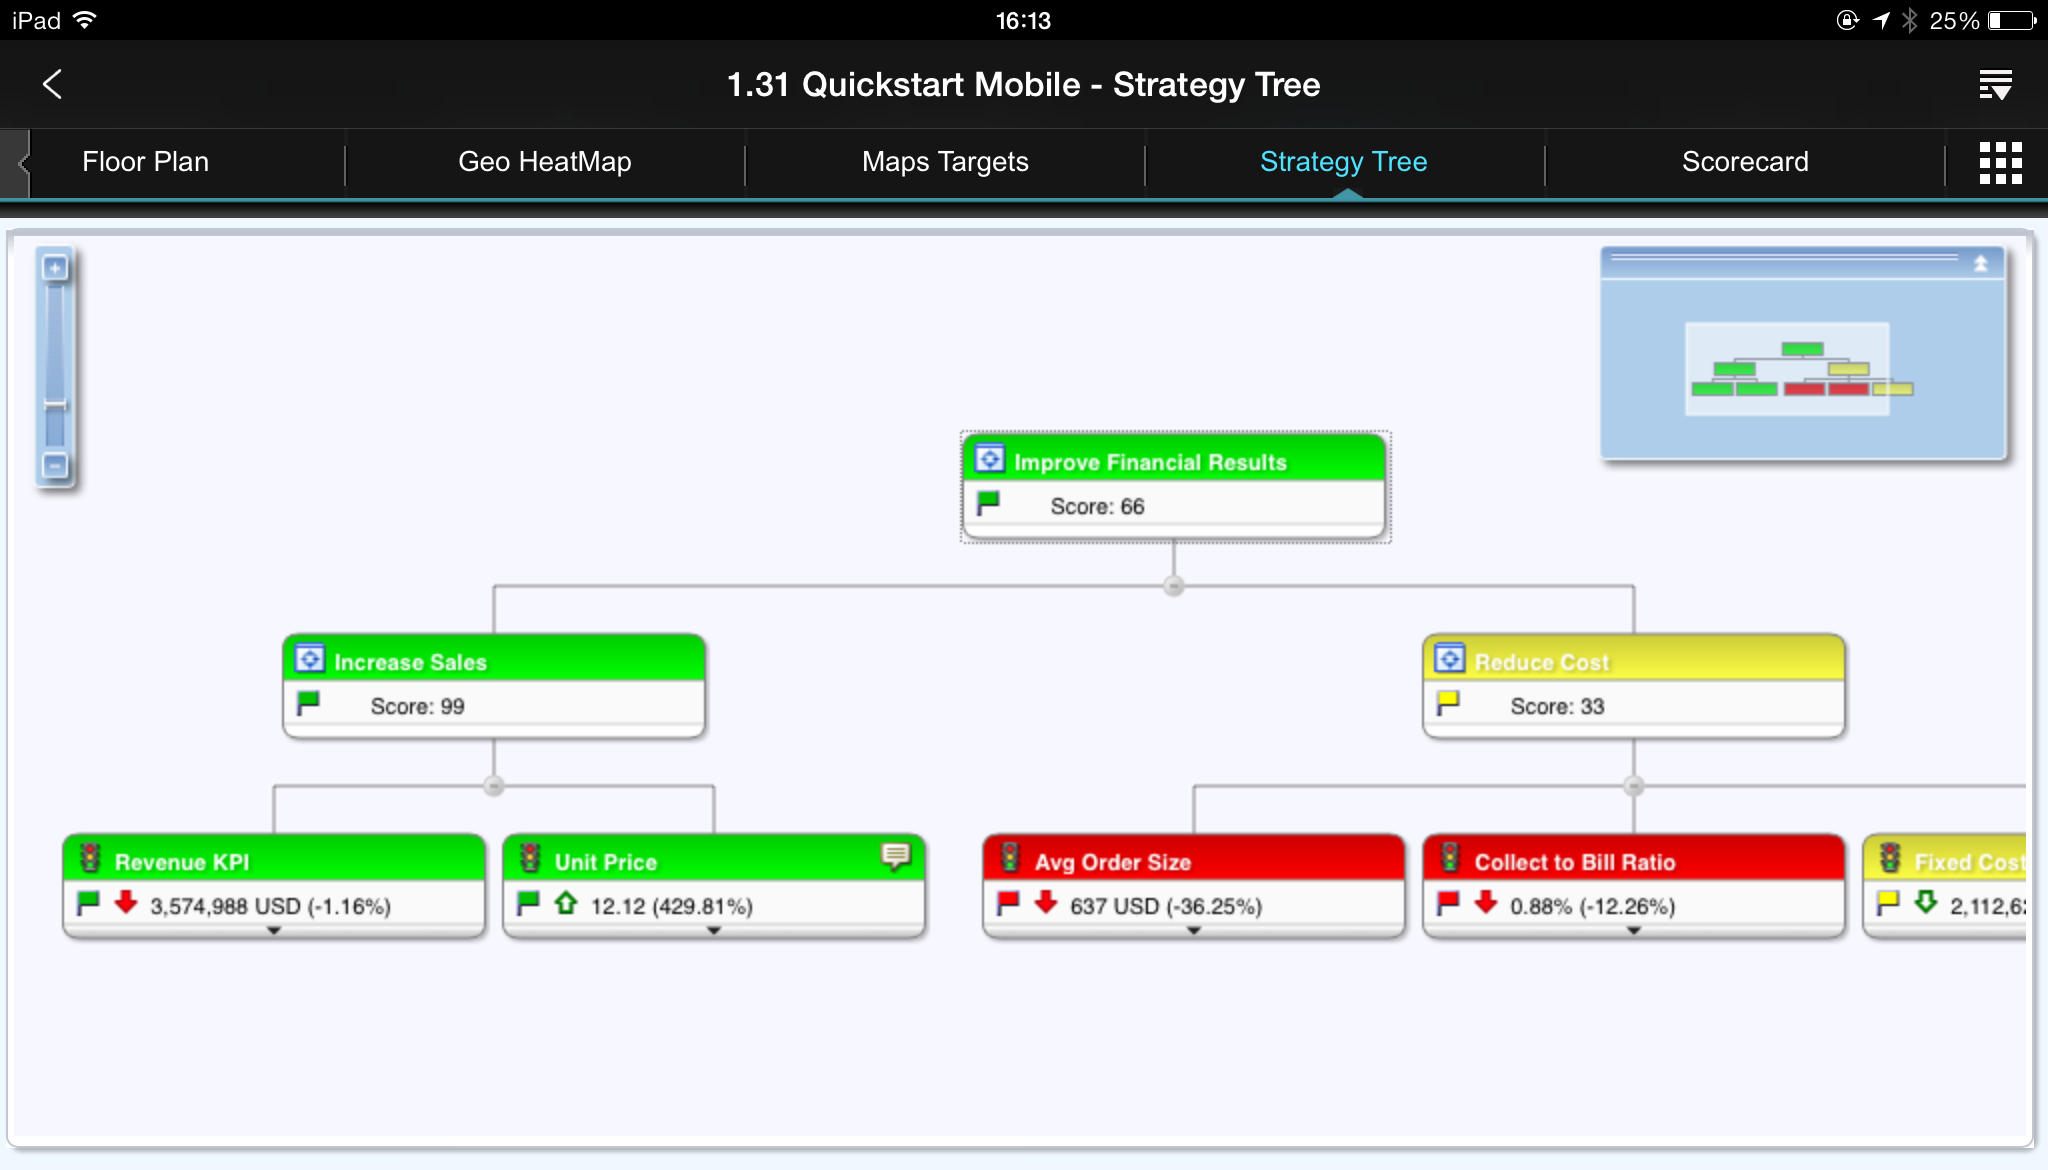 Strategy tree as viewed in Oracle BI Mobile